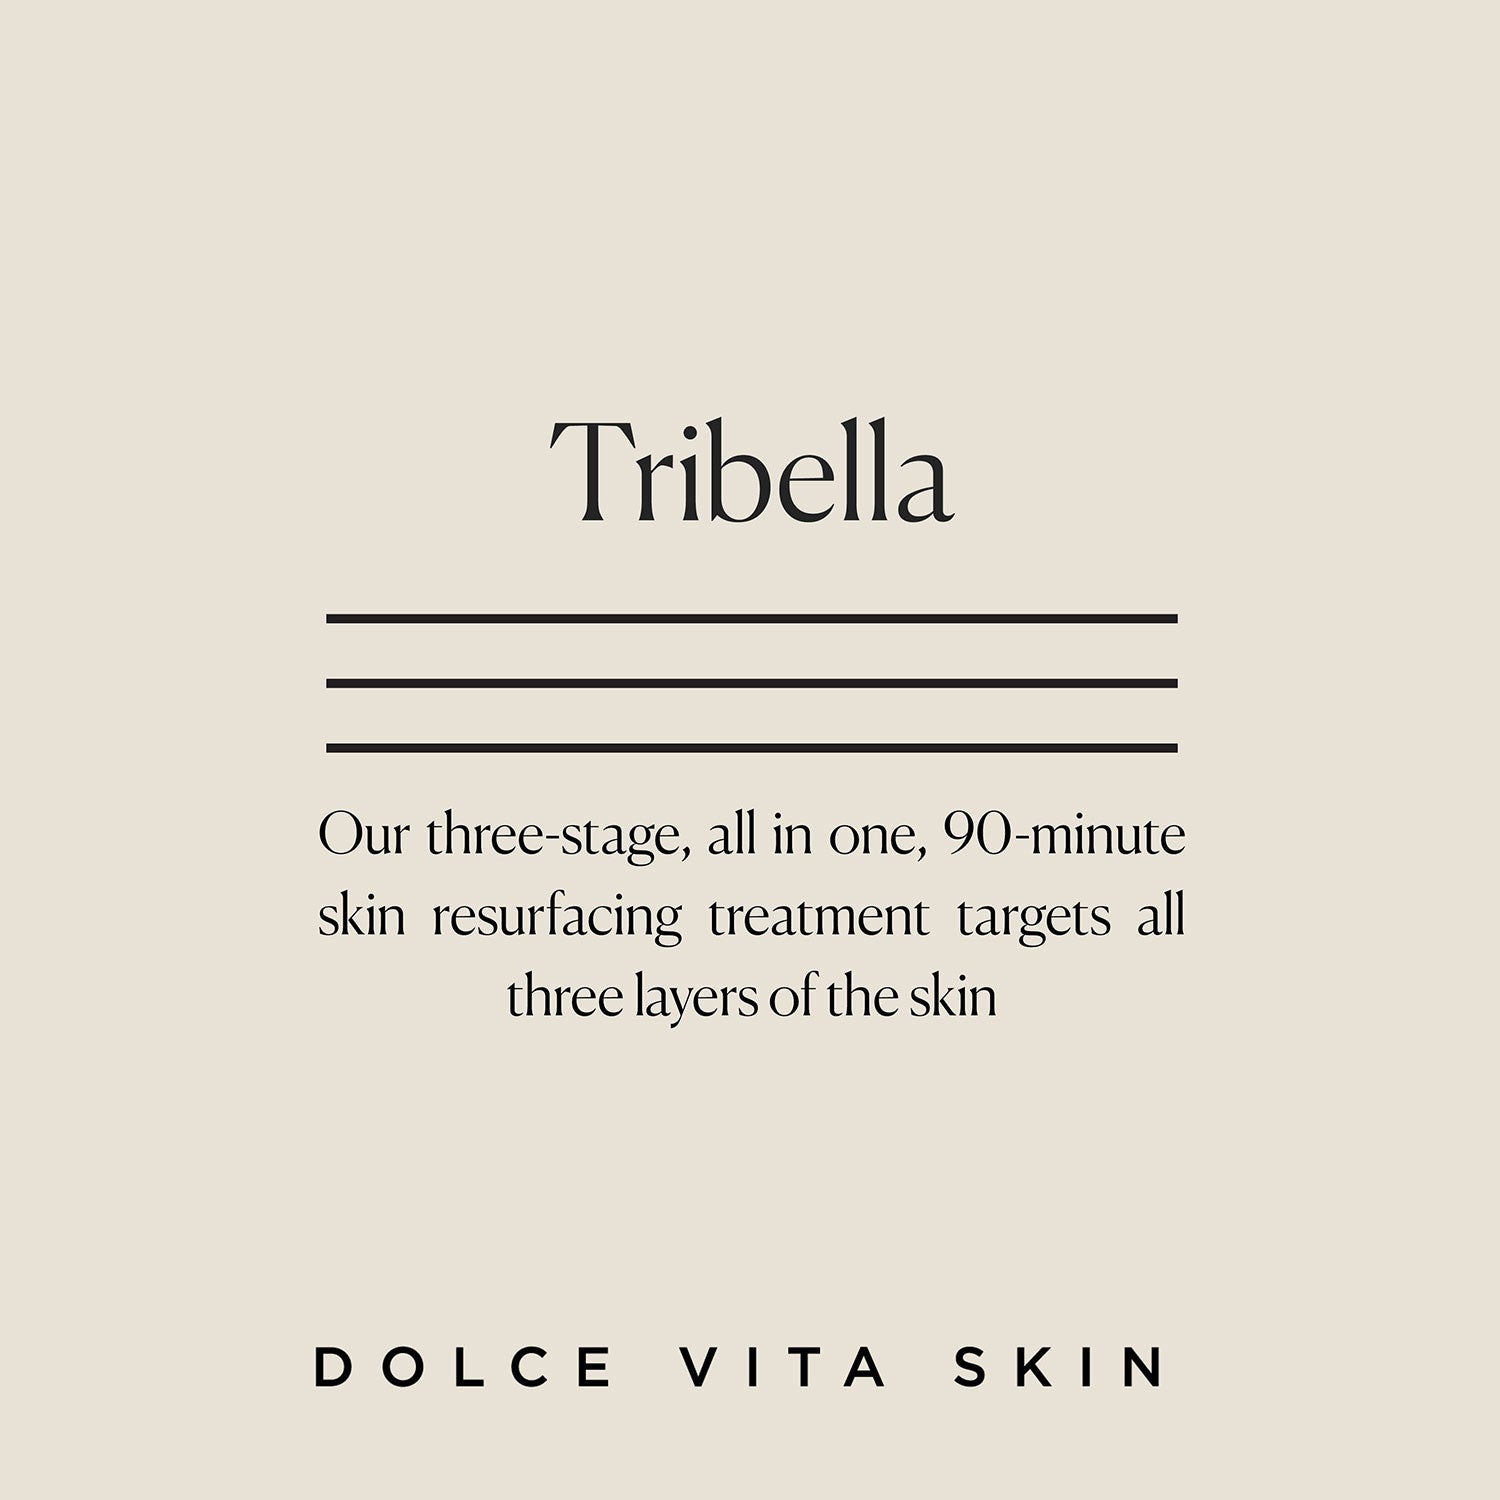 Tribella - The ultimate non-surgical skin rejuvenation treatment